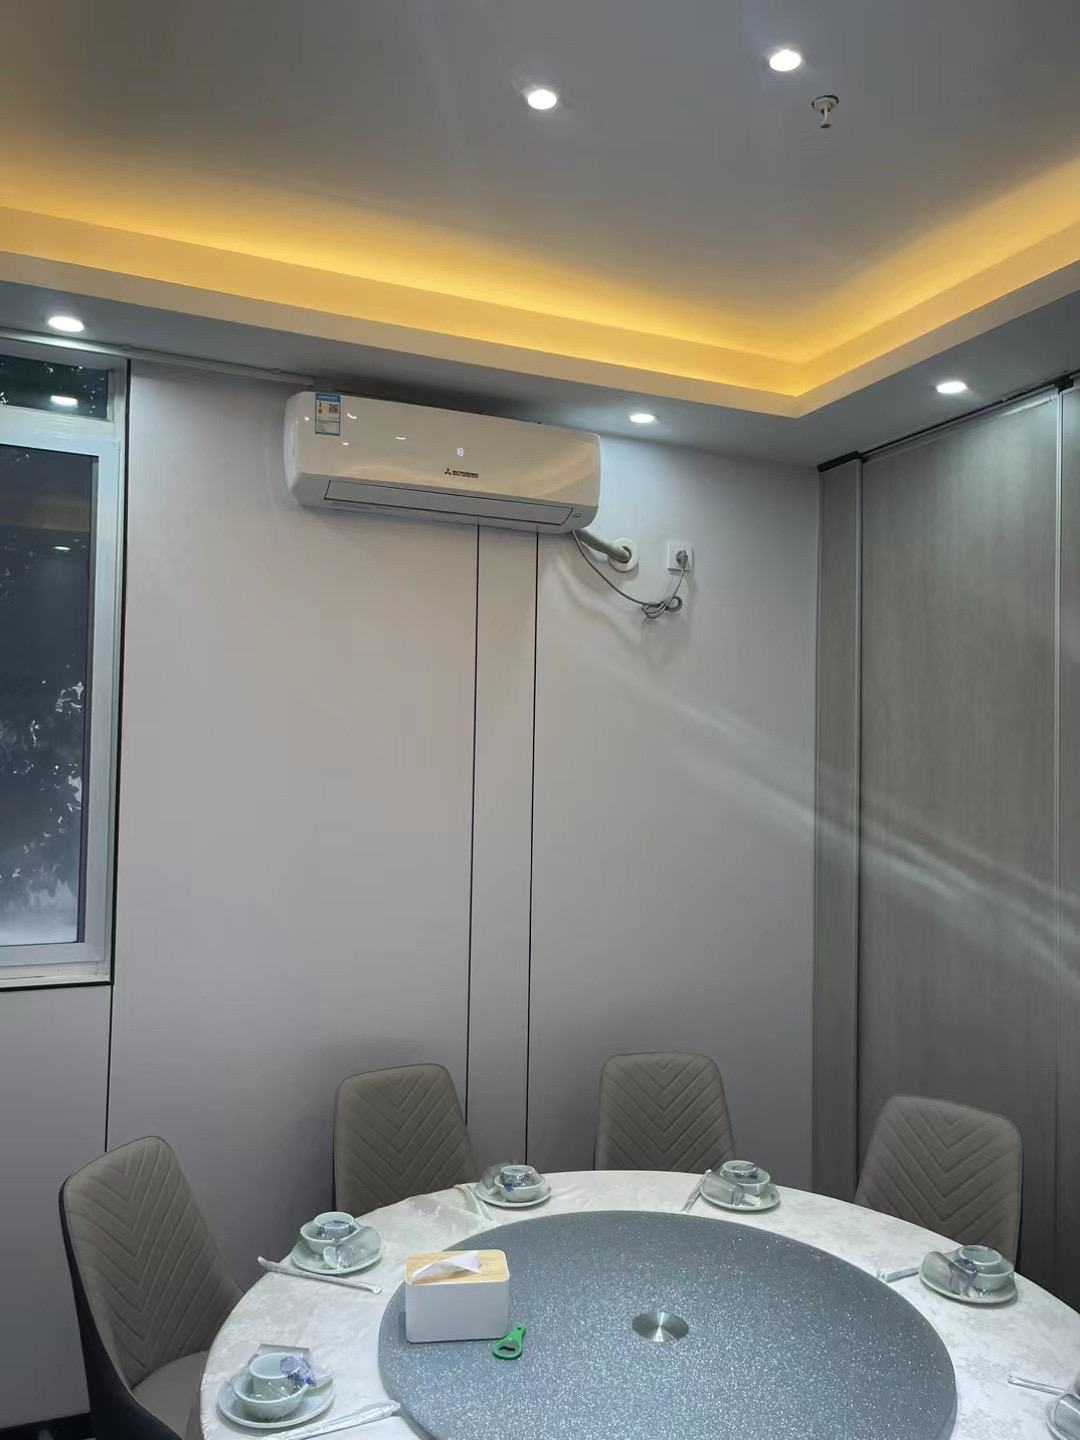 三菱重工空调1.5匹挂机 卧室变频冷暖家用壁挂式新3级能效KFR-35GW/QHVD5WBp晒单图